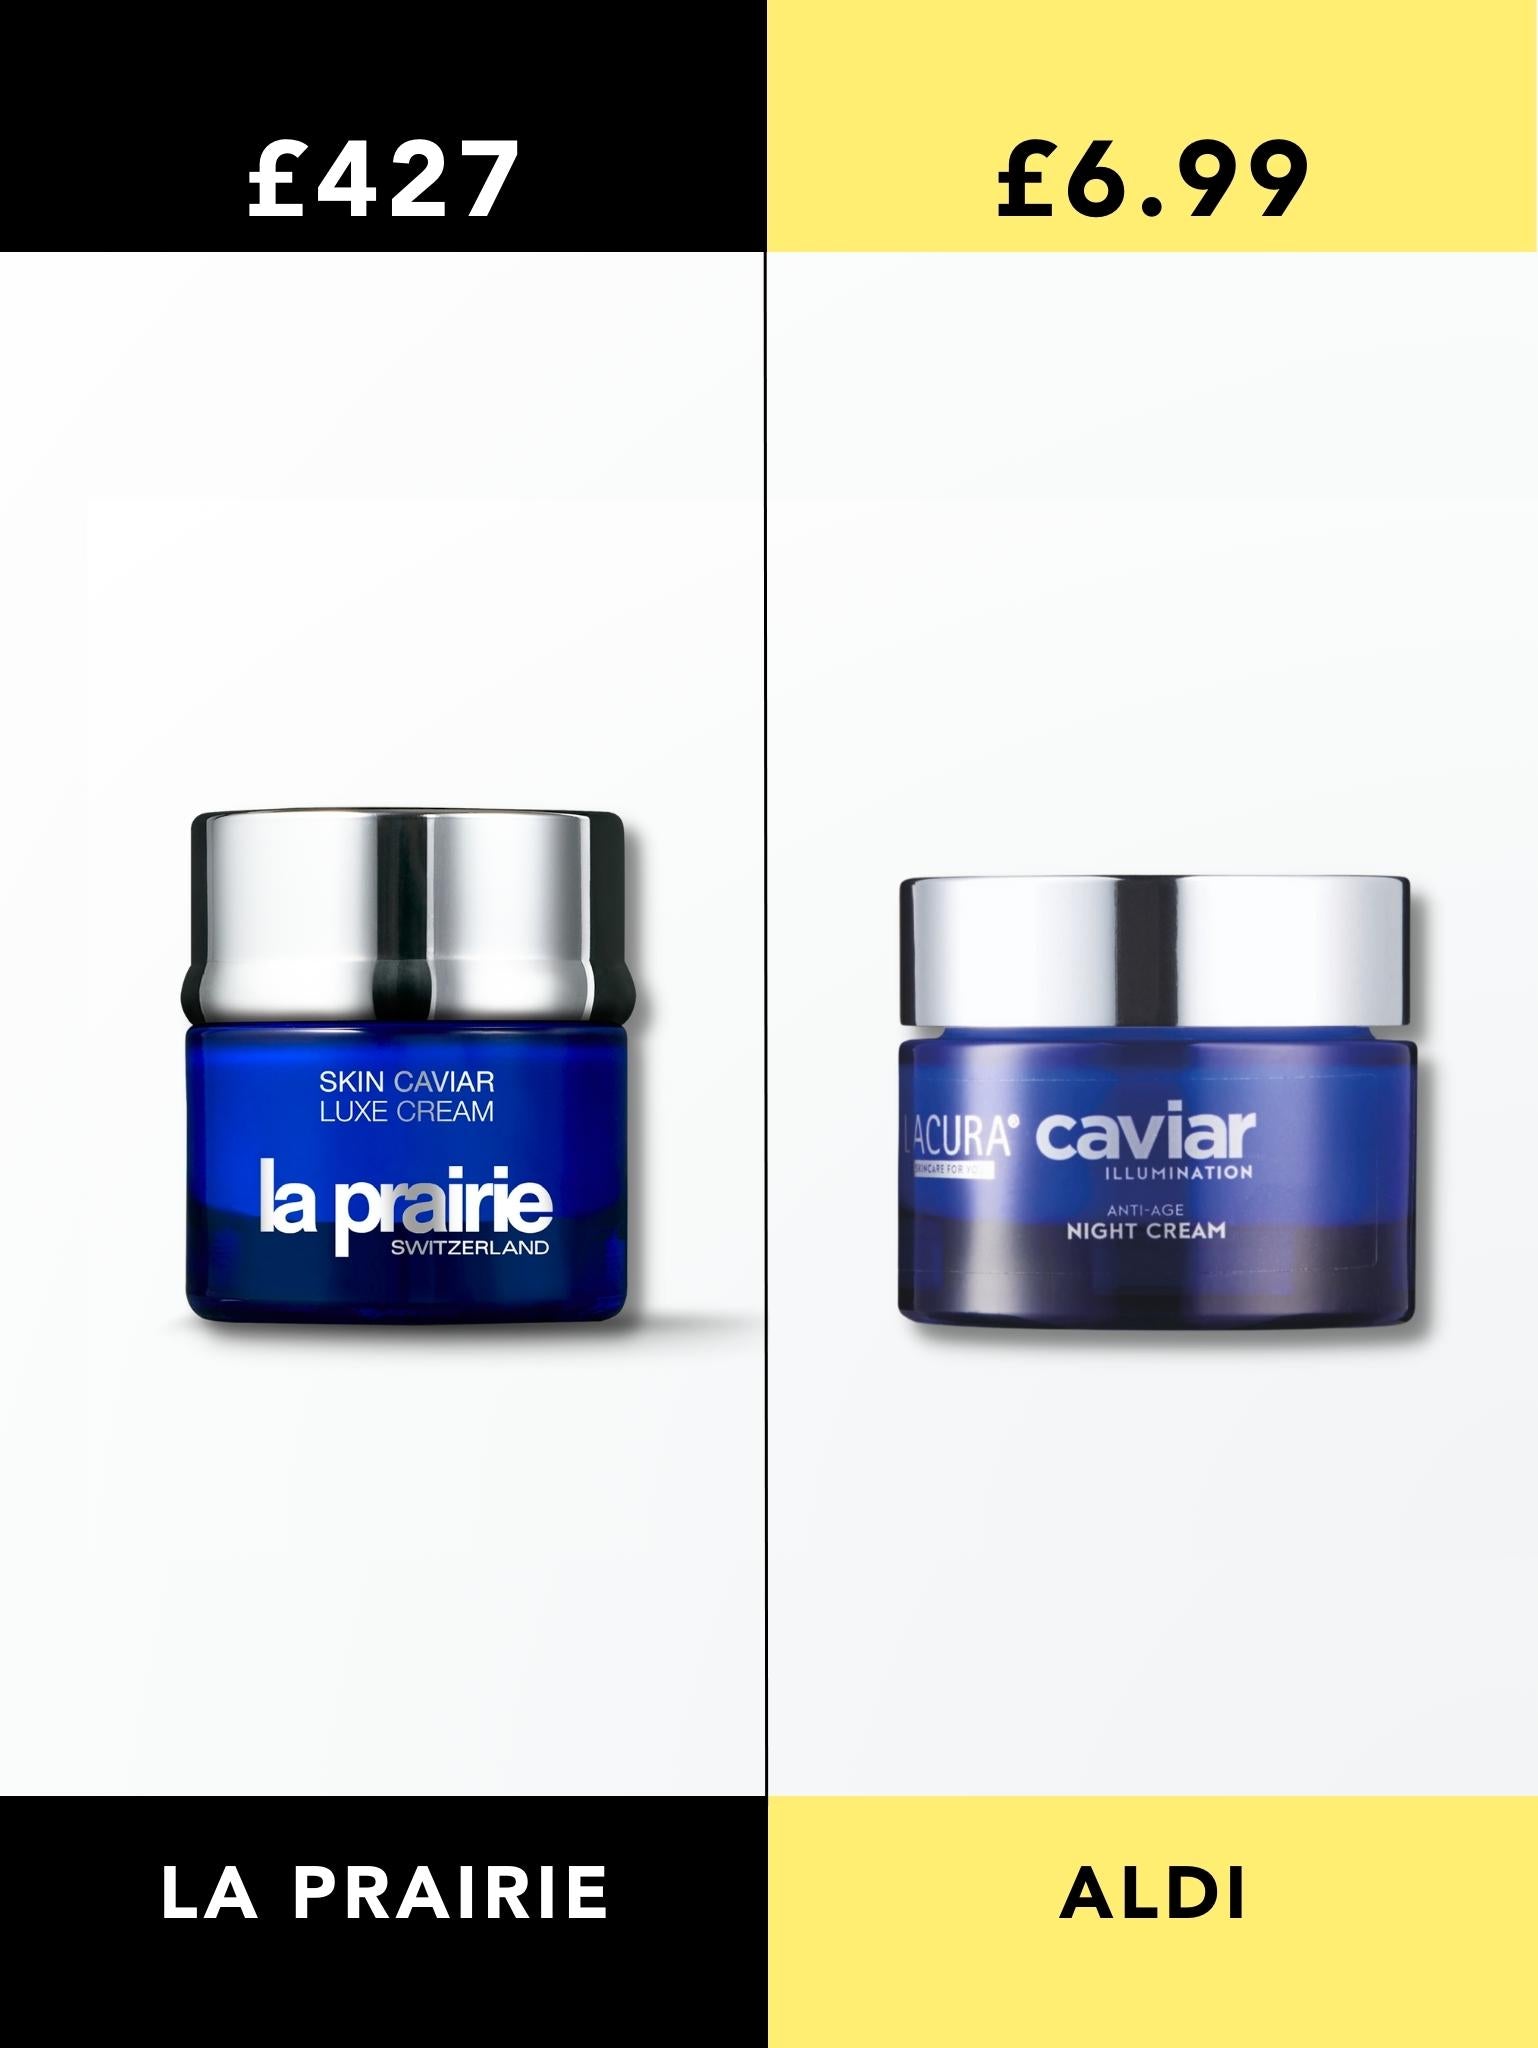 La Prairie Caviar Cream vs Aldi Caviar Cream